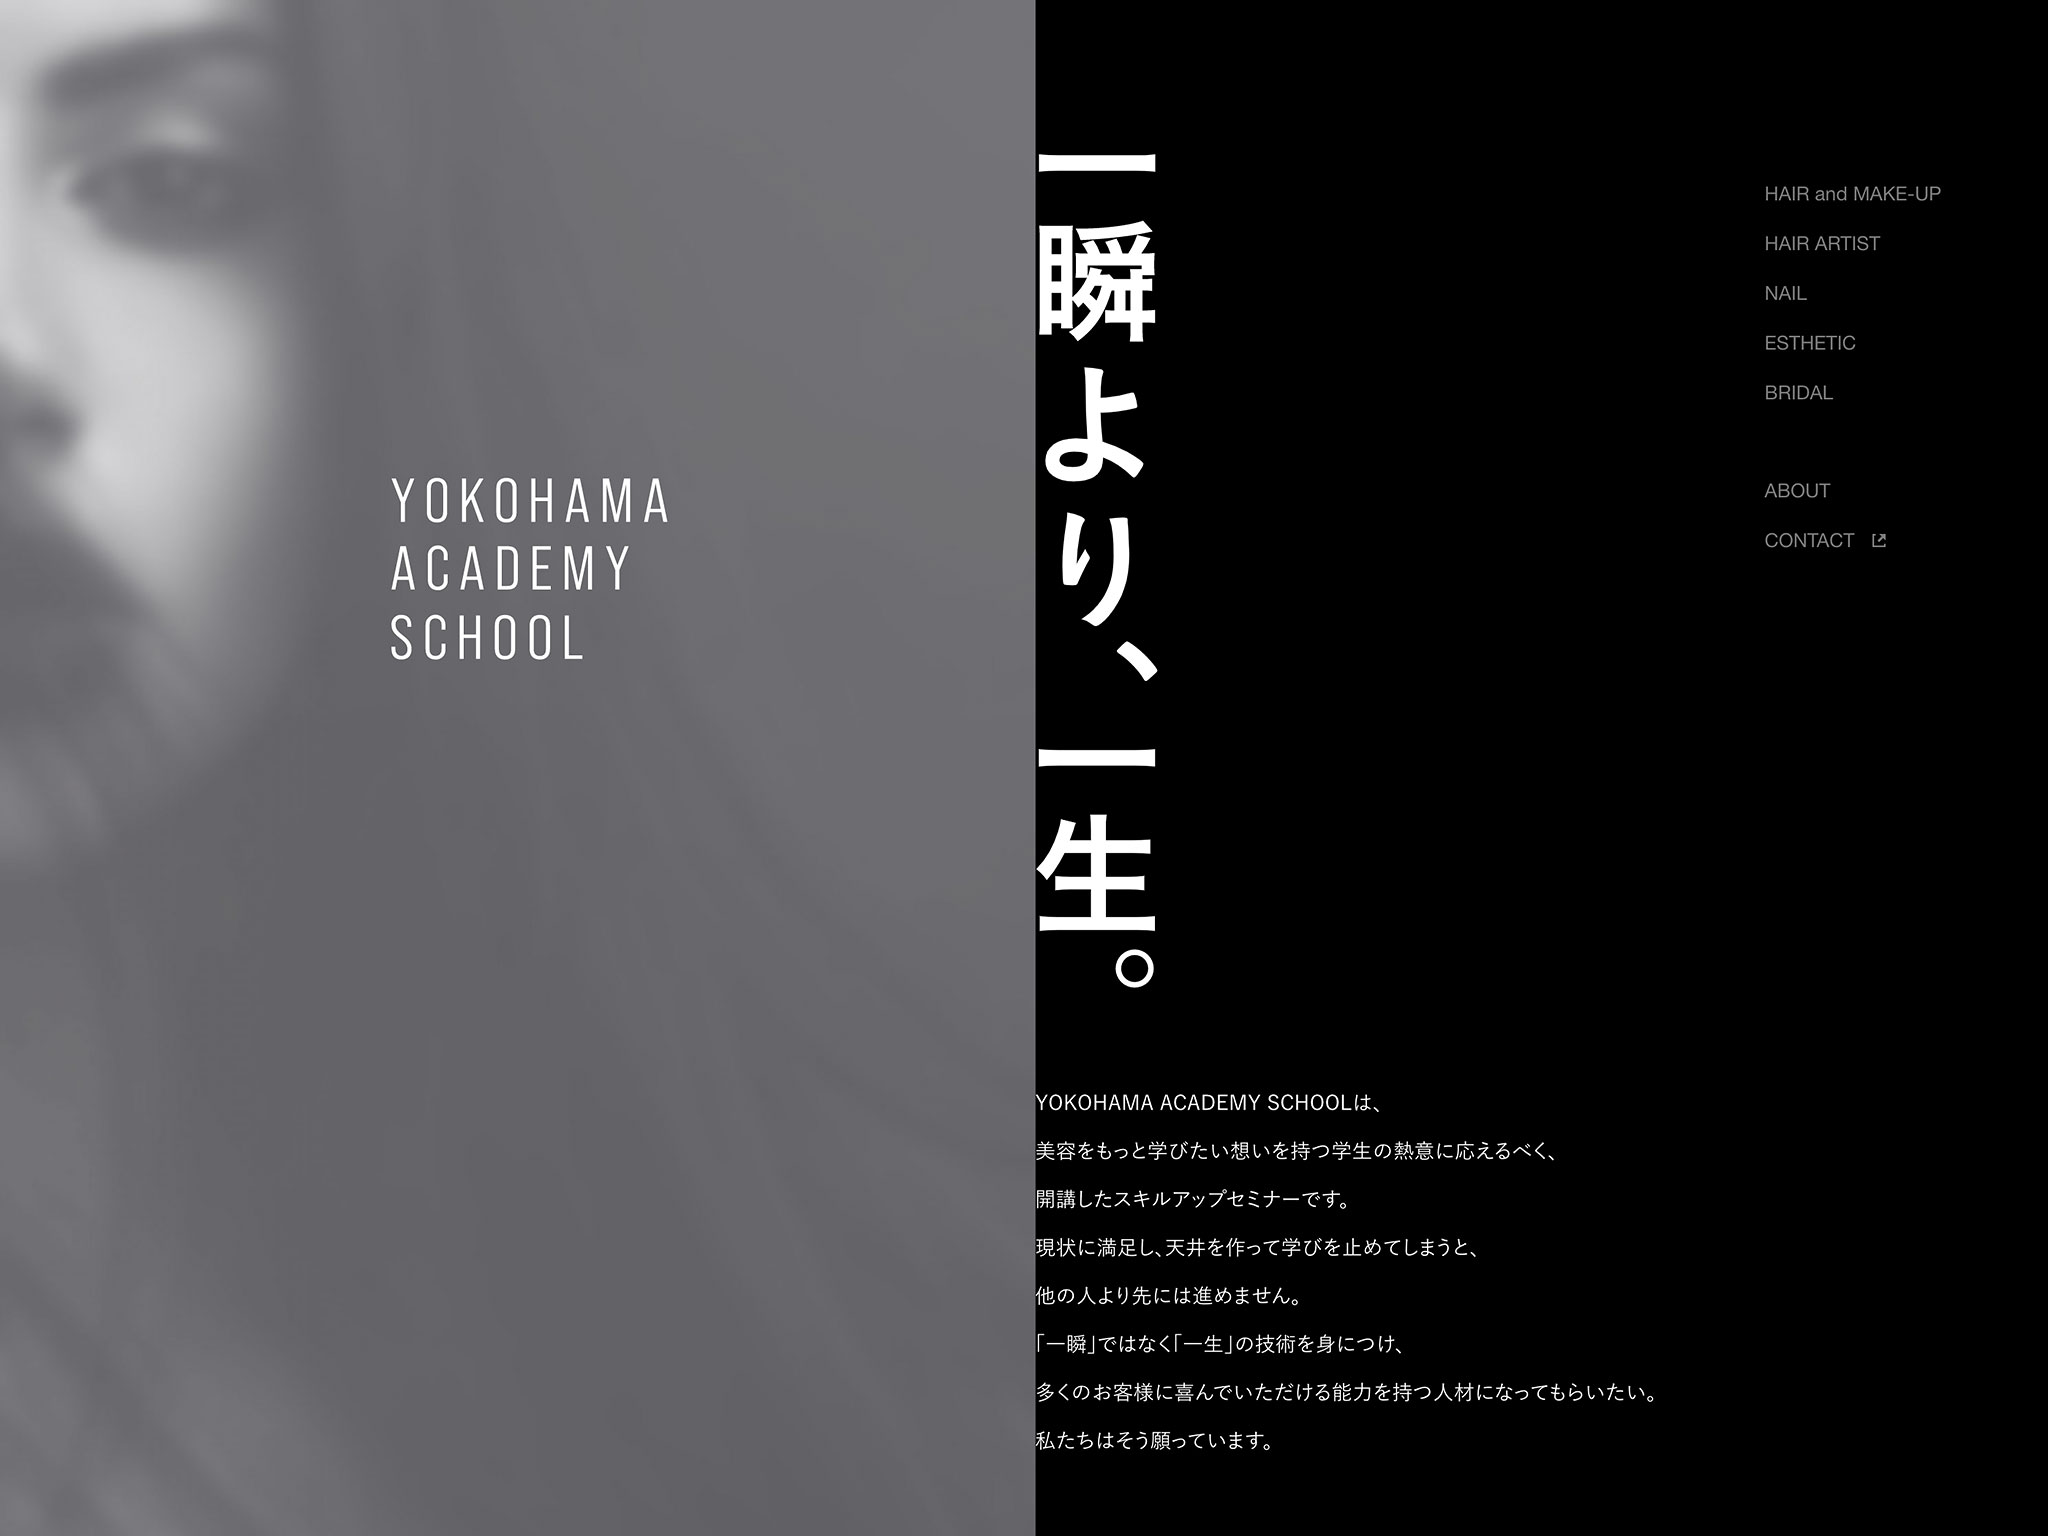 YOKOHAMA ACADEMY SCHOOL